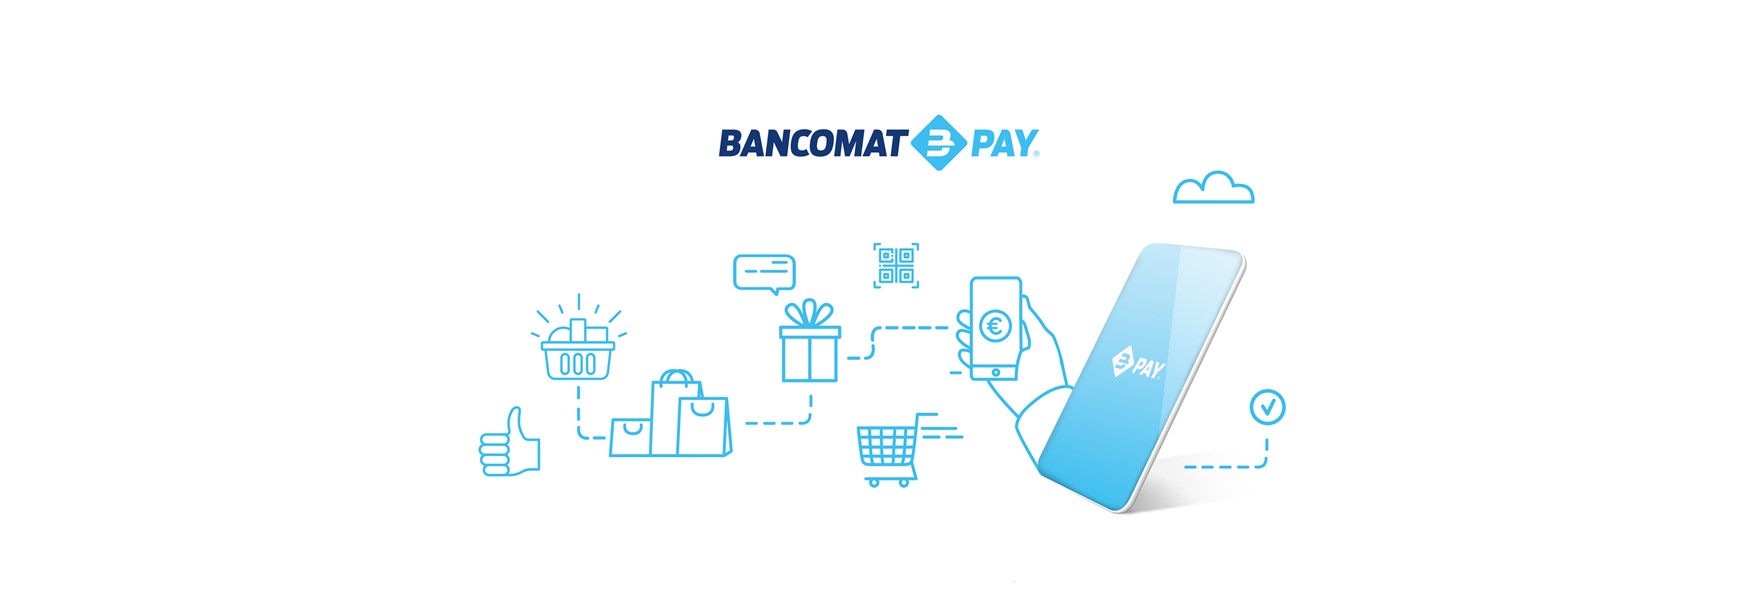 Bancomat Pay 